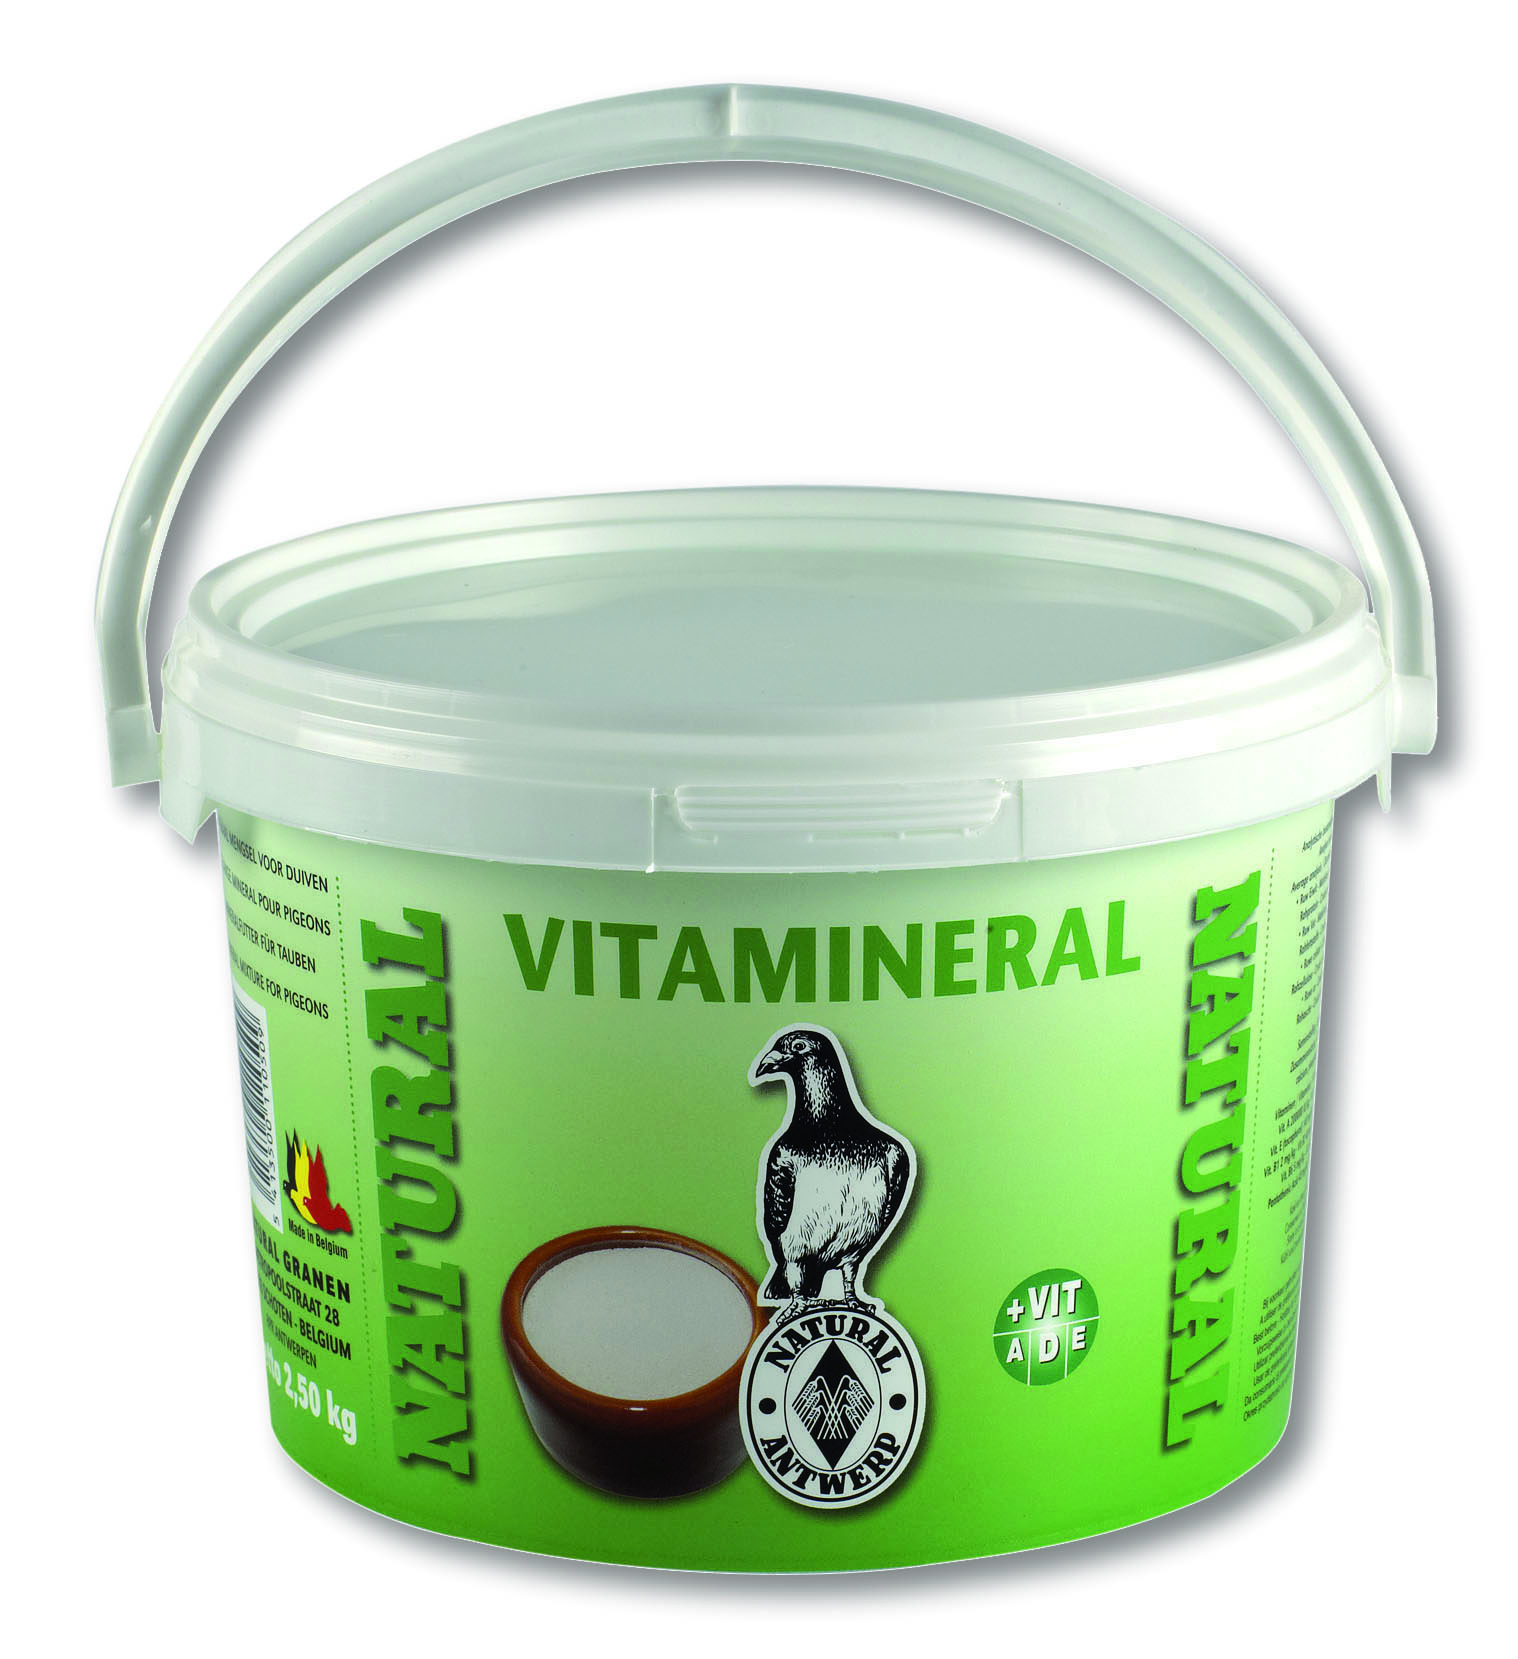 Natural vitamineral - <Product shot>